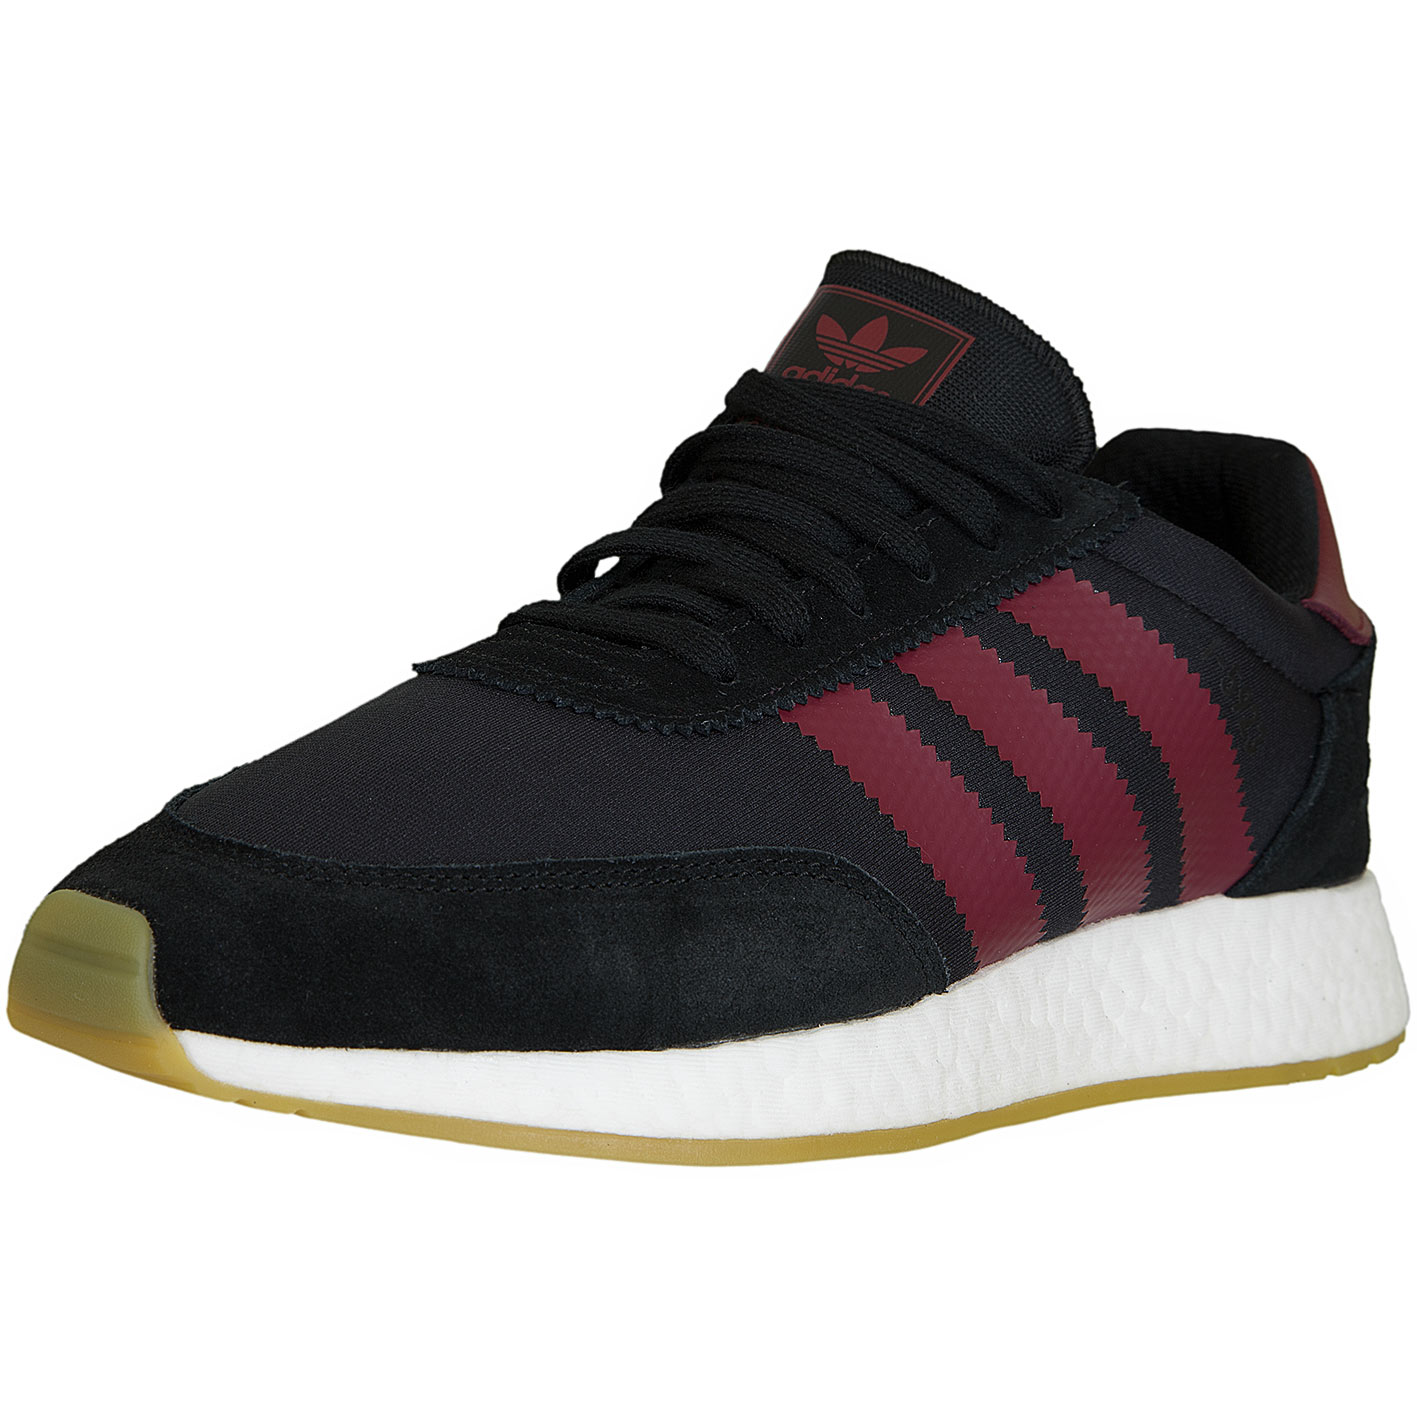 ☆ Adidas Originals Sneaker I-5923 schwarz/weinrot - hier bestellen!